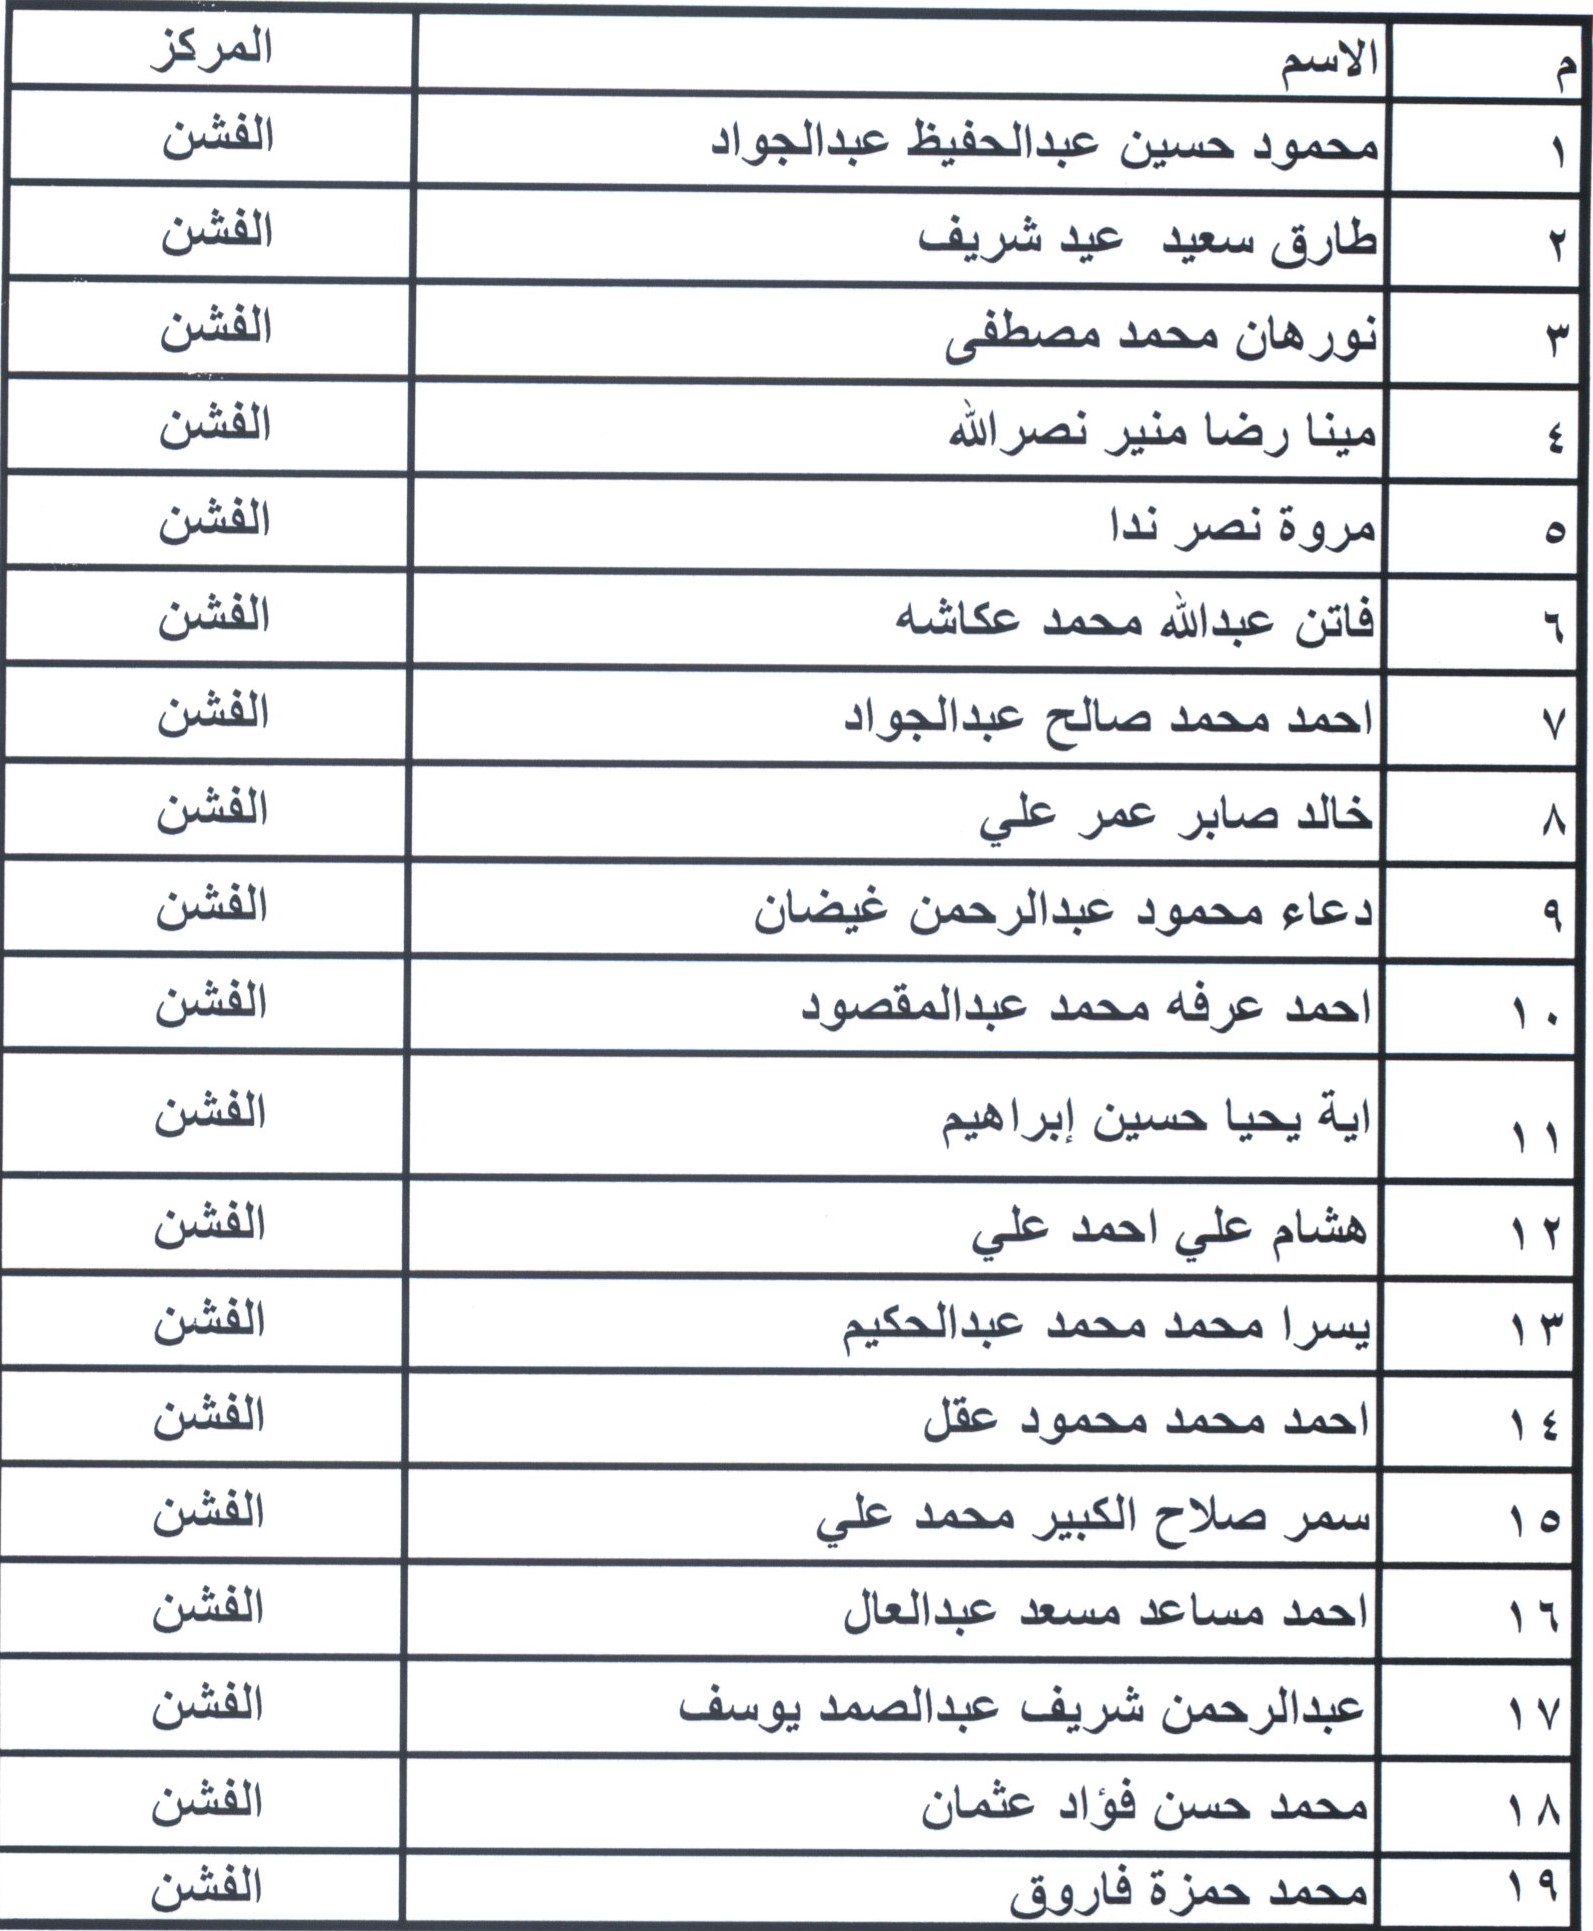 أسماء مرشحى شغل الوظائف ببمحافظة بنى سويف (14)